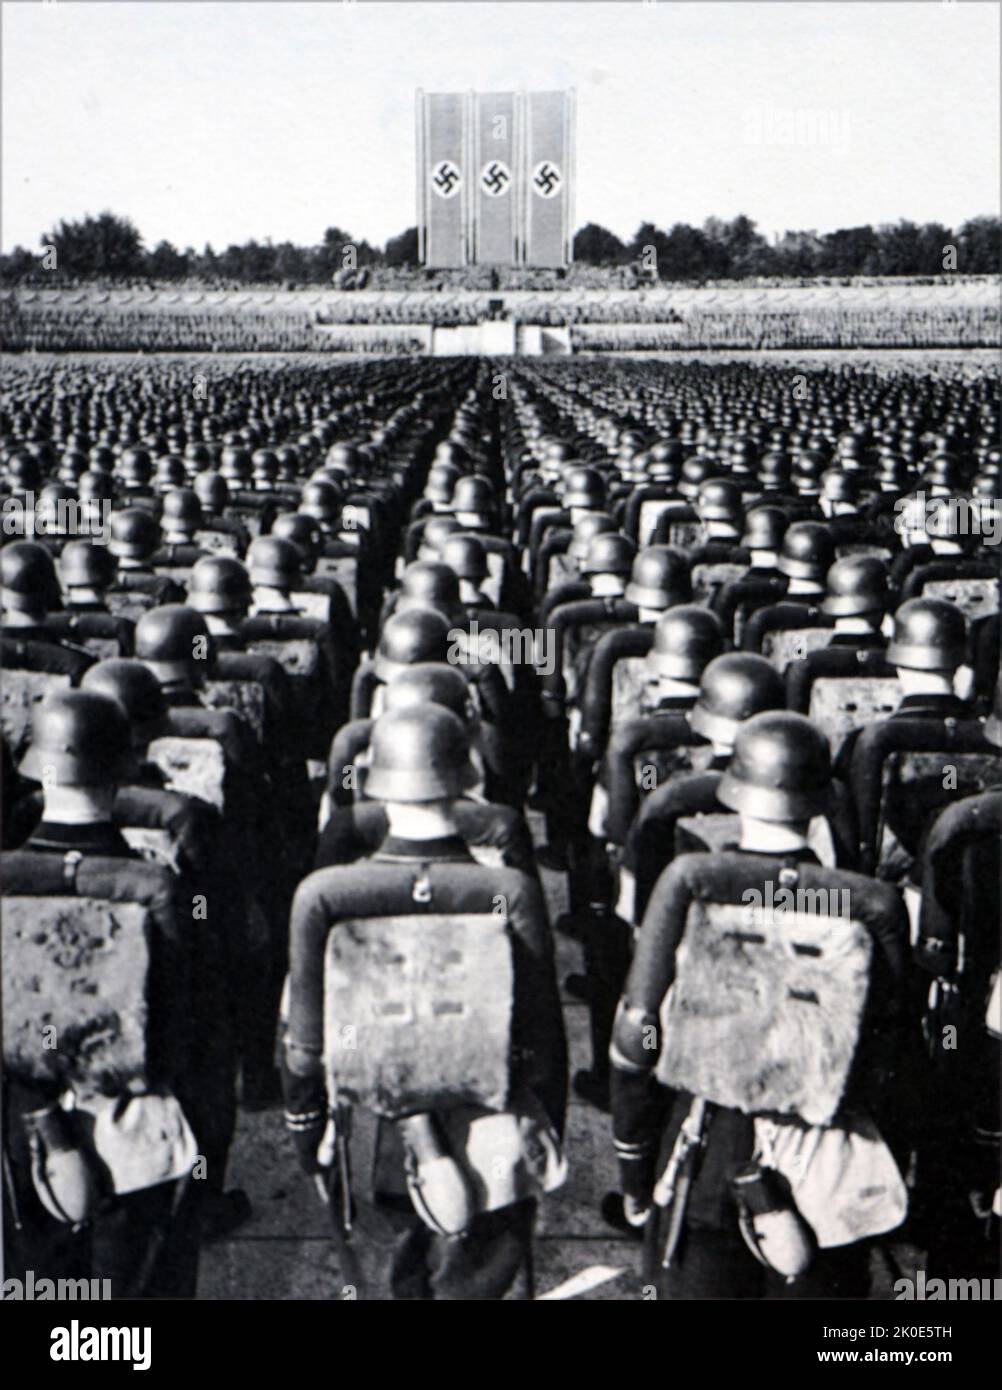 Le rallye de Nuremberg est le rassemblement annuel du Parti nazi en Allemagne, qui s'est tenu de 1923 à 1938. Ils ont été de grands événements de propagande nazie, en particulier après l'arrivée au pouvoir d'Adolf Hitler en 1933. Ces événements ont eu lieu sur les lieux de rassemblement du parti nazi à Nuremberg de 1933 à 1938. Banque D'Images